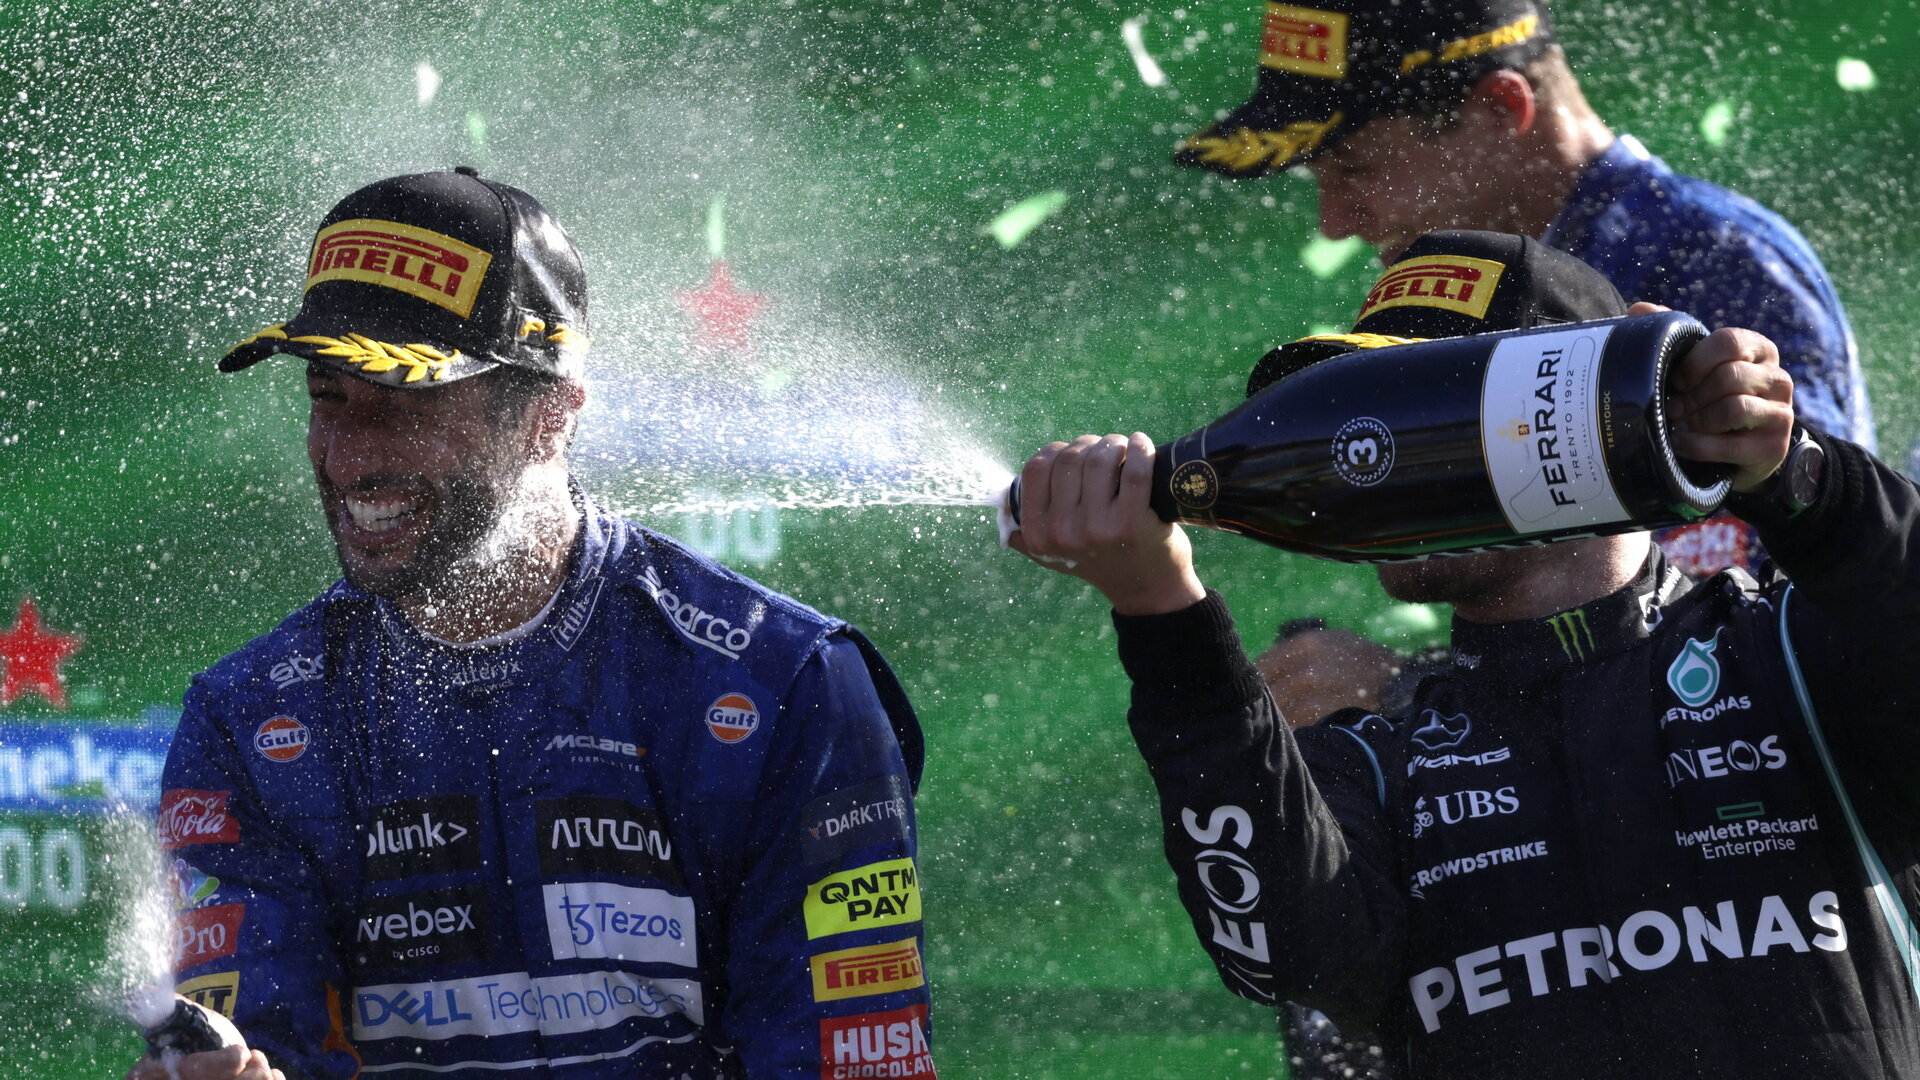 Daniel Ricciardo a Valtteri Bottas si užívají šampaňské na pódiu po závodě na Monze